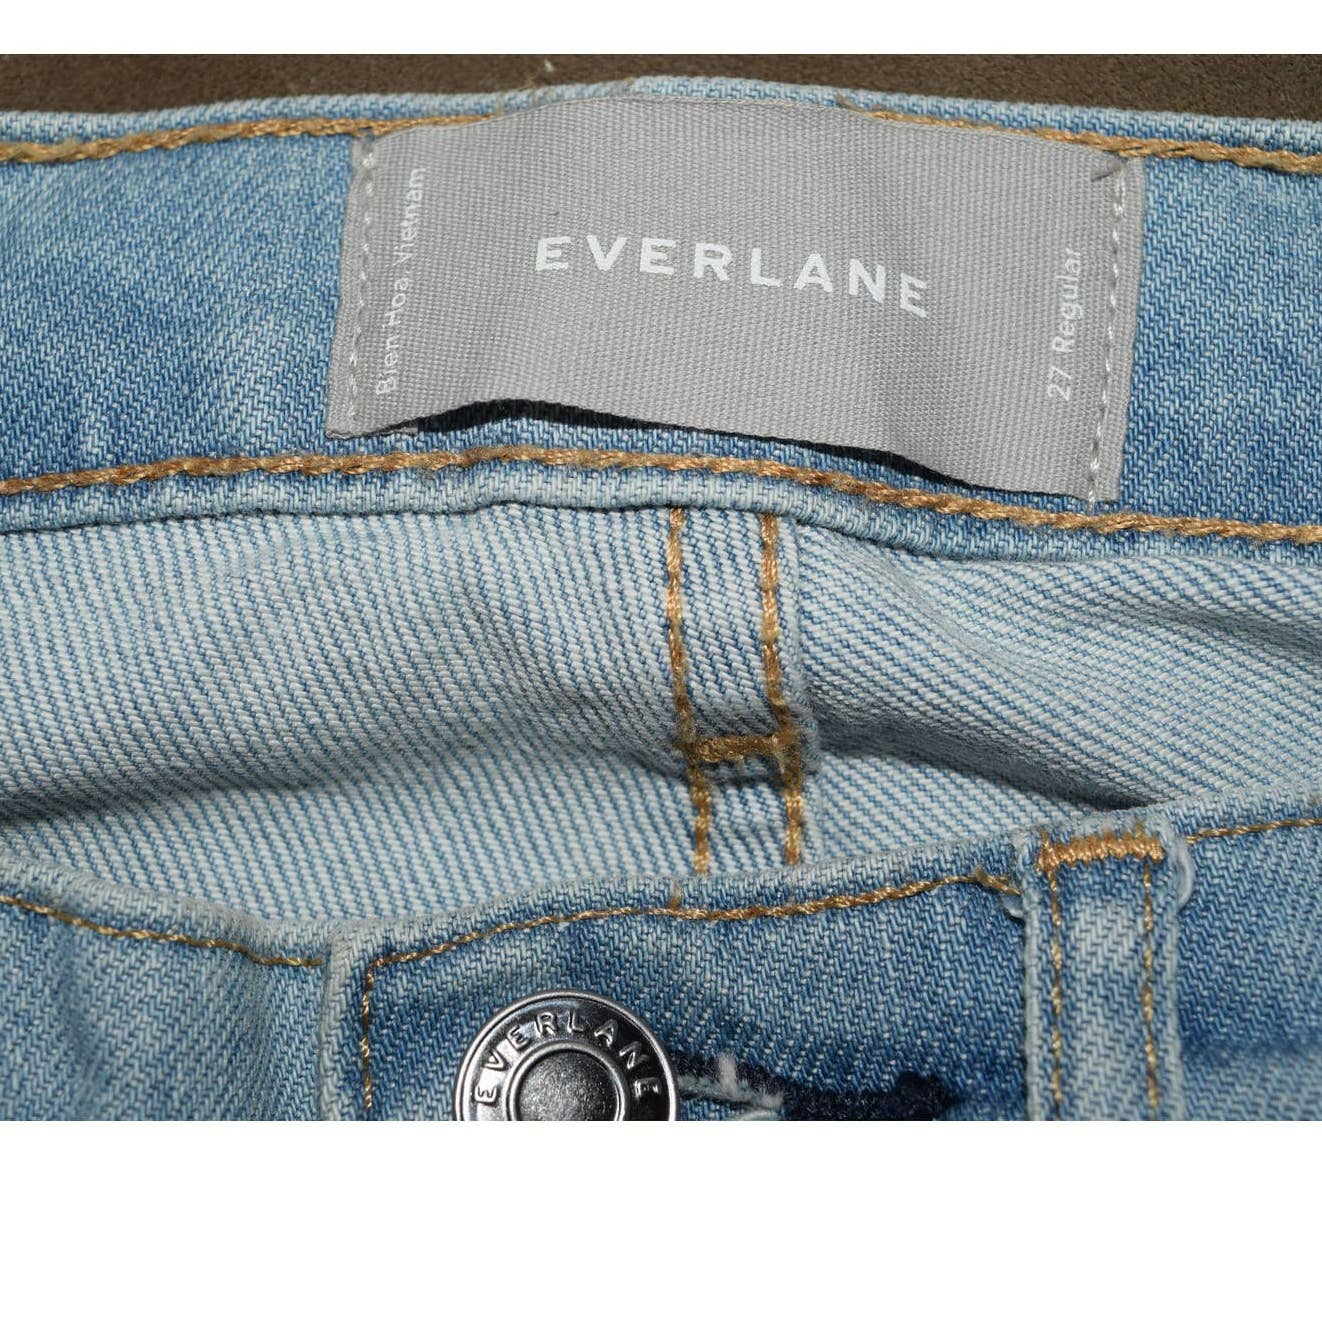 Everlane Acid Wash Fray Hem Denim Jeans - 27 R